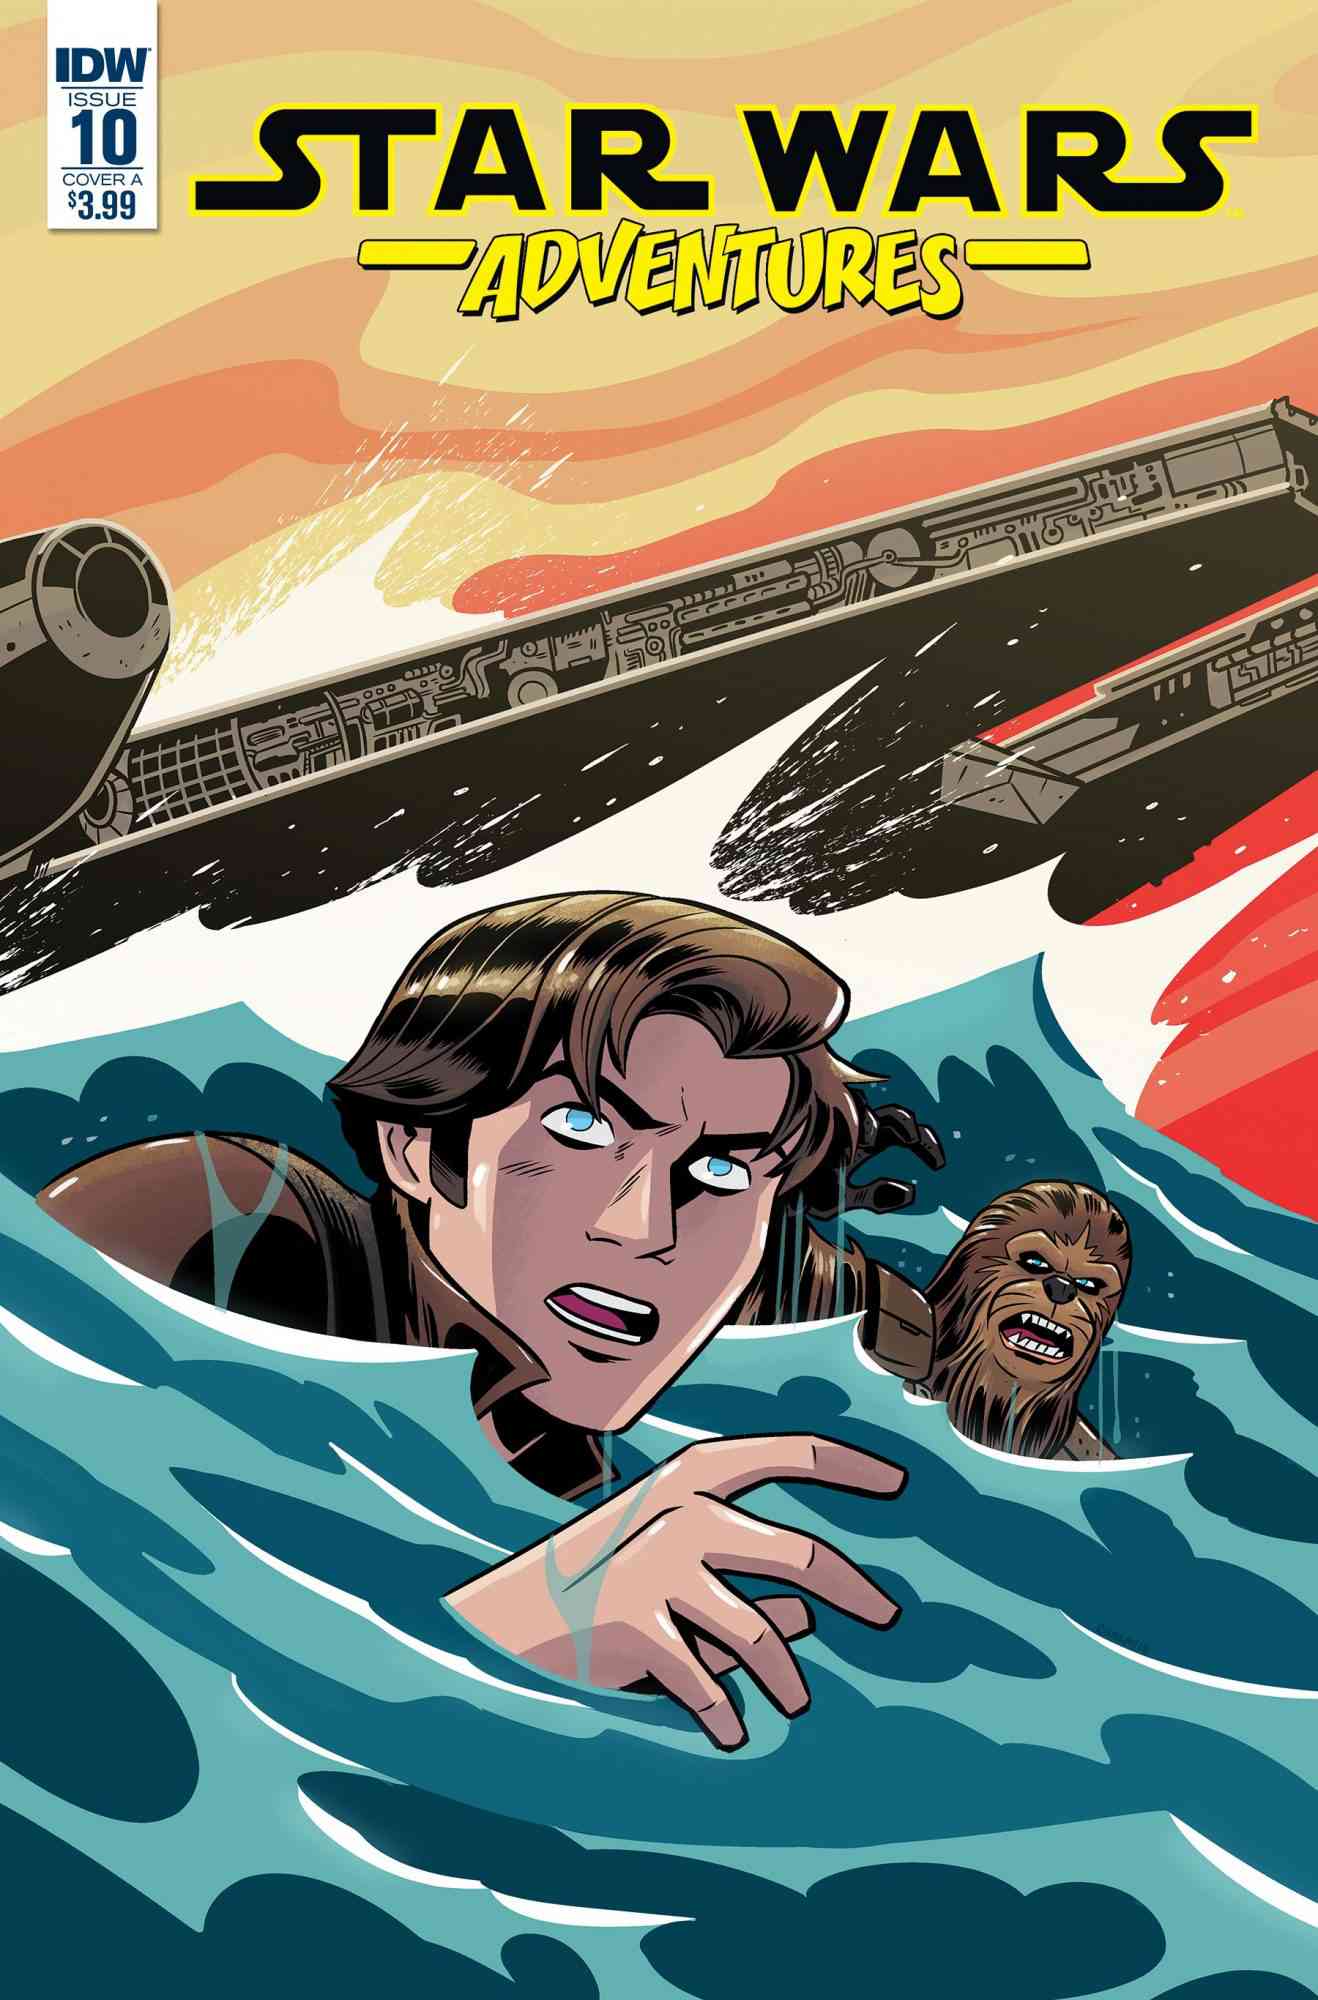 Star Wars 'Solo' Comic Books CR: Disney